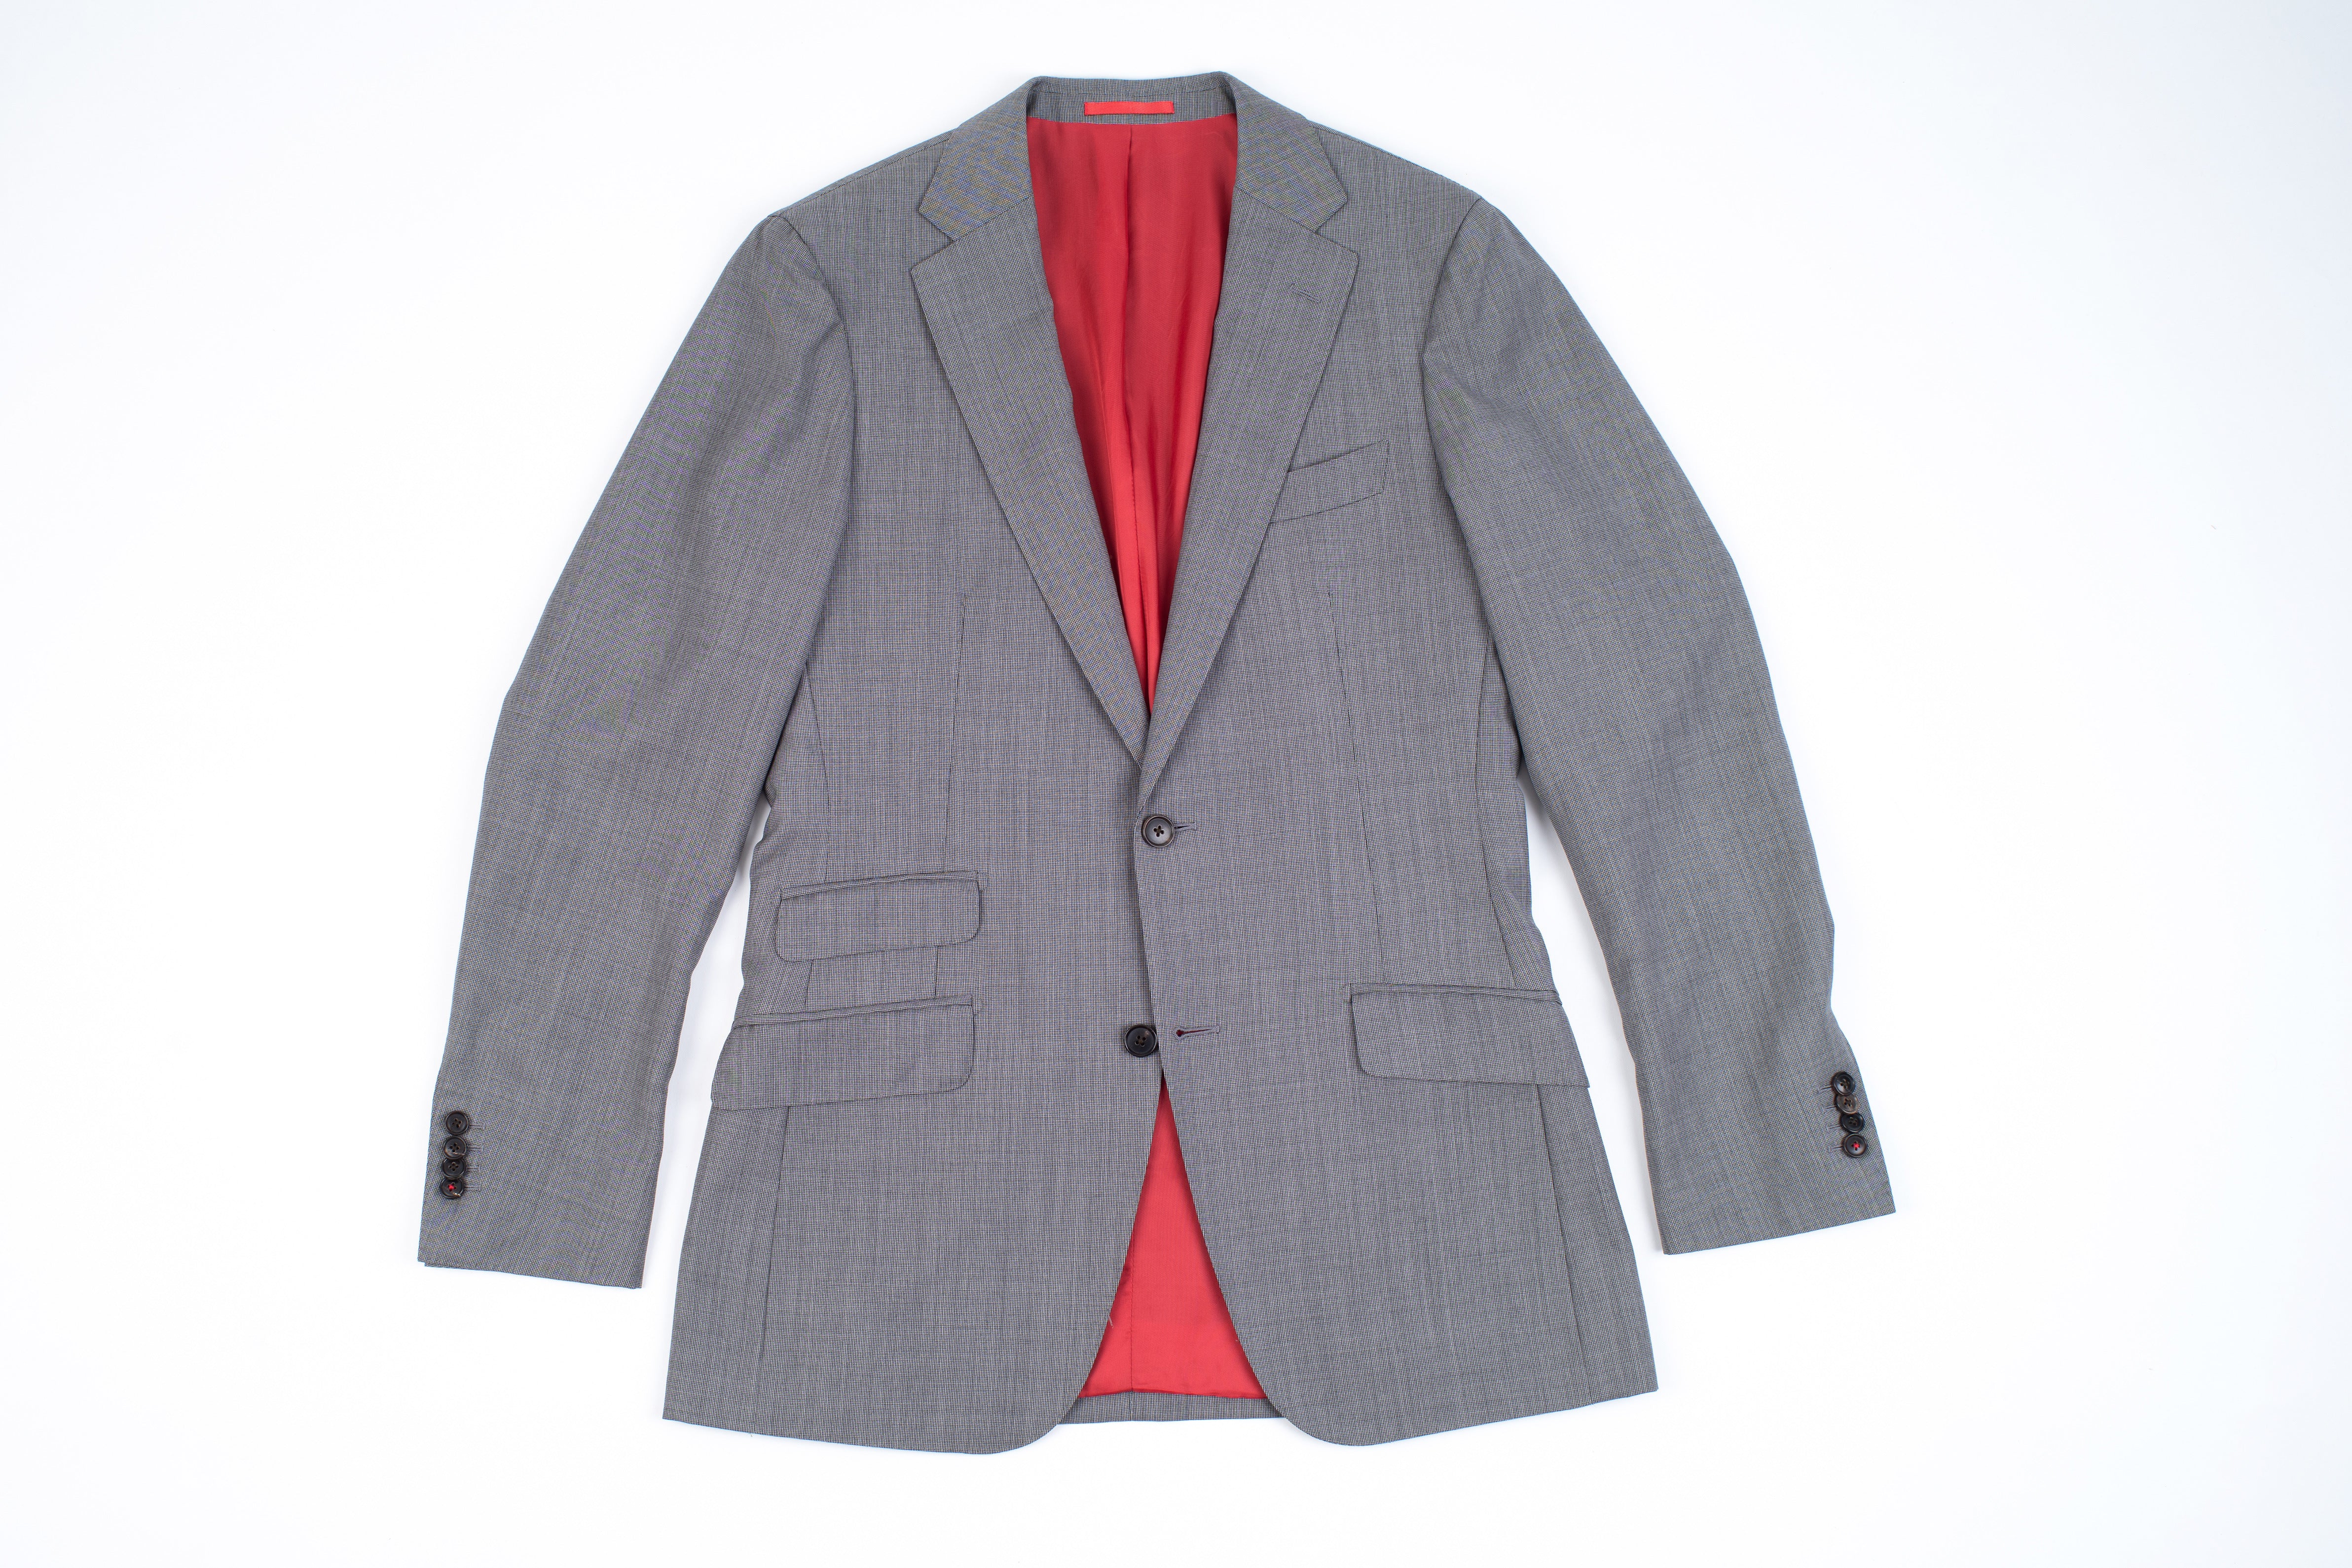 Suitsupply Sienna 2 Button Super 130's Wool Gray Blazer US 38L, EU 94